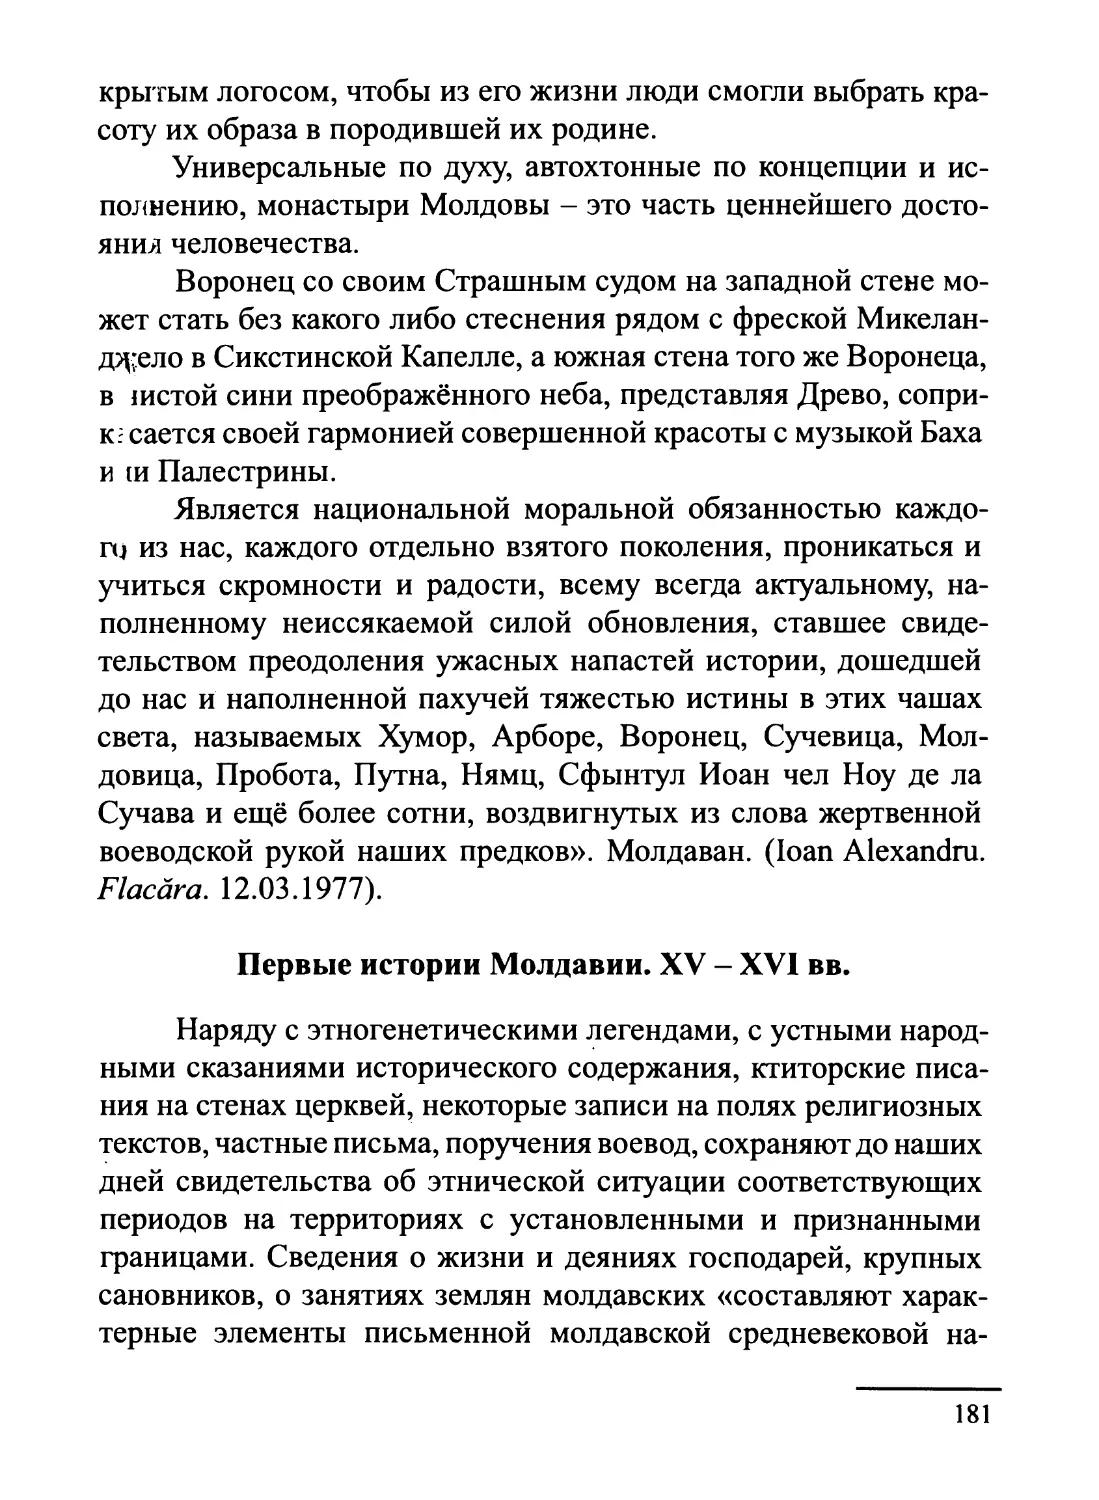 Первые истории Молдавии. XV - XVI вв.